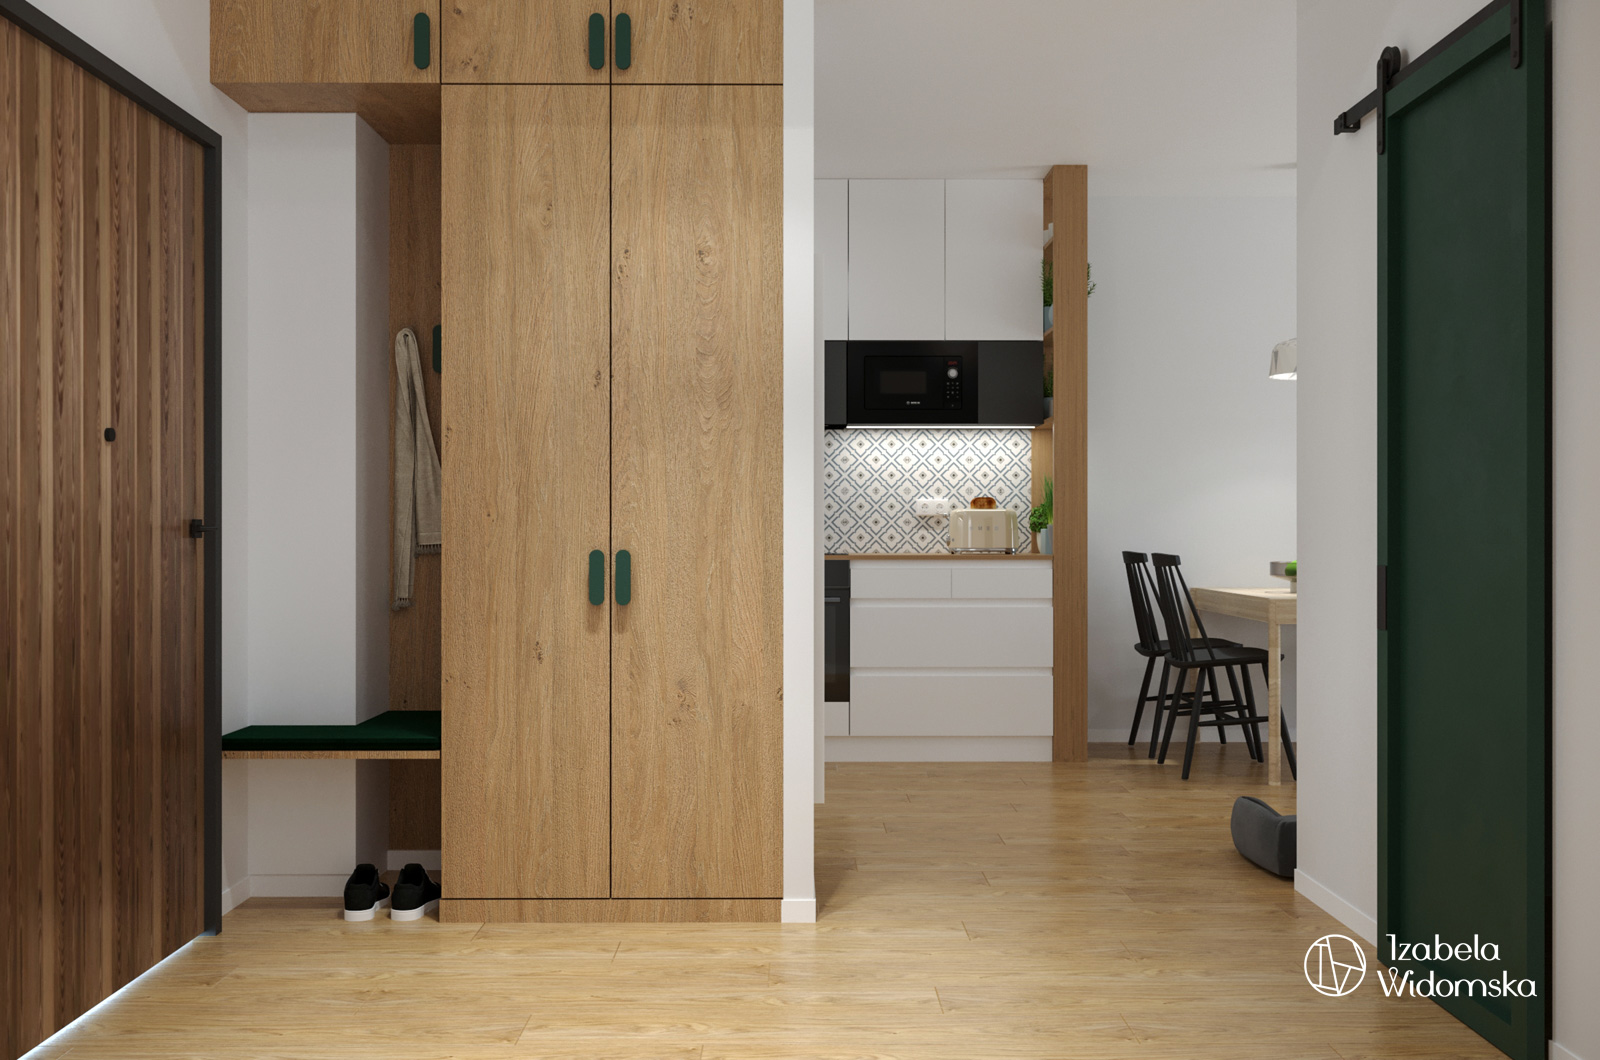 Mieszkanie dla dwojga z pieskiem | Harmonia Dobre życie Dopasowanie | Projekt wnętrza architekt Izabela Widomska